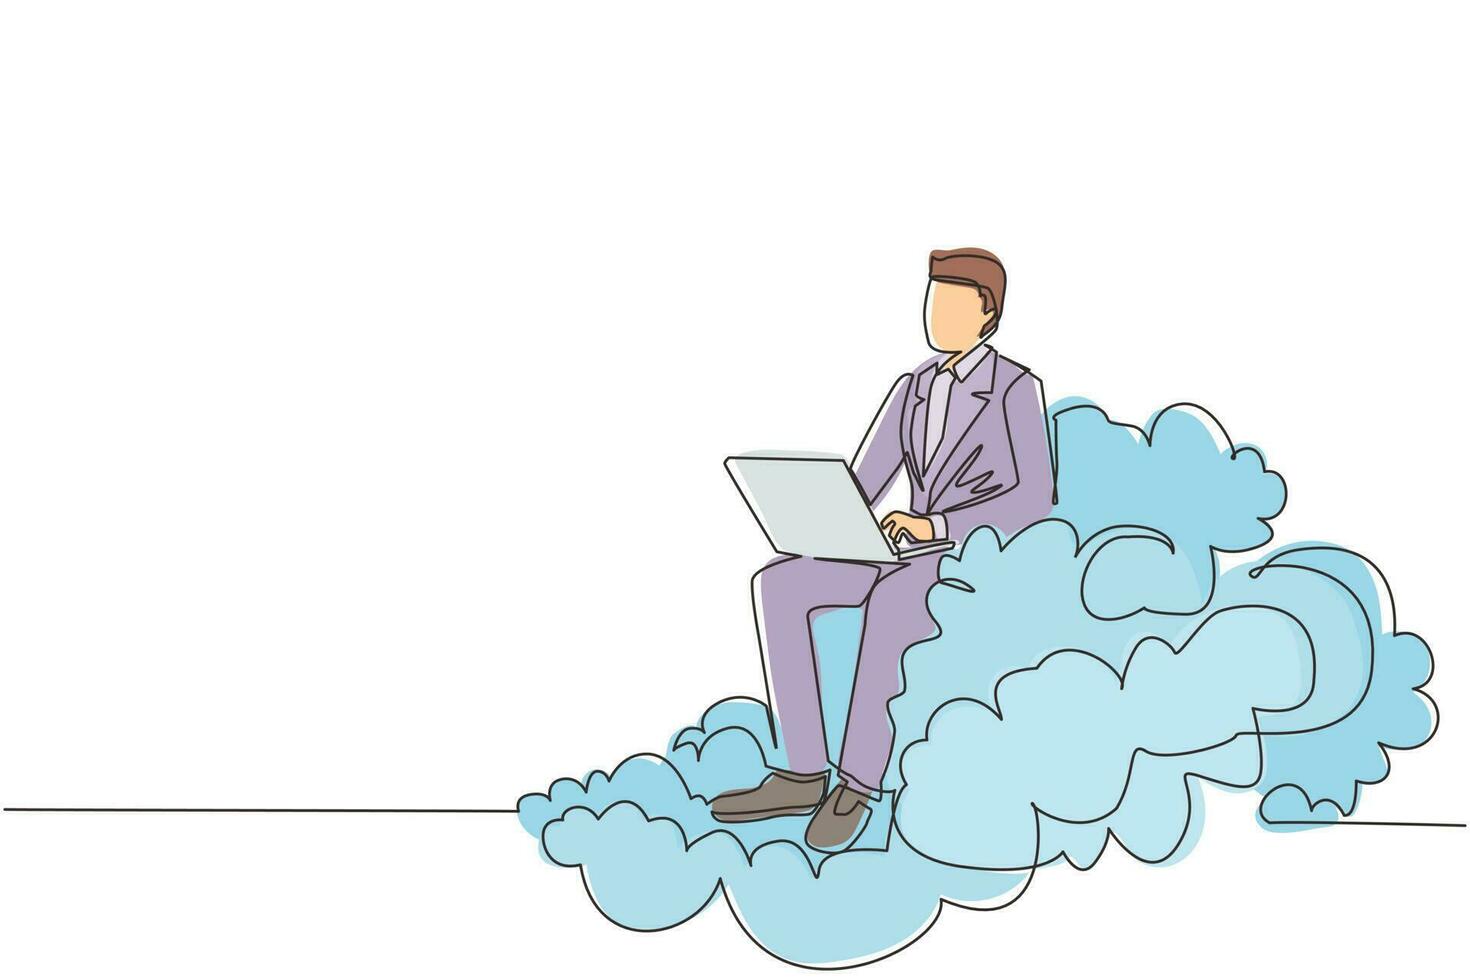 hombre de negocios de dibujo de una sola línea sentado en la nube en el cielo y trabajando con una computadora portátil. conexión inalámbrica. redes sociales y chatear usando almacenamiento en la nube. vector gráfico de diseño de dibujo de línea continua